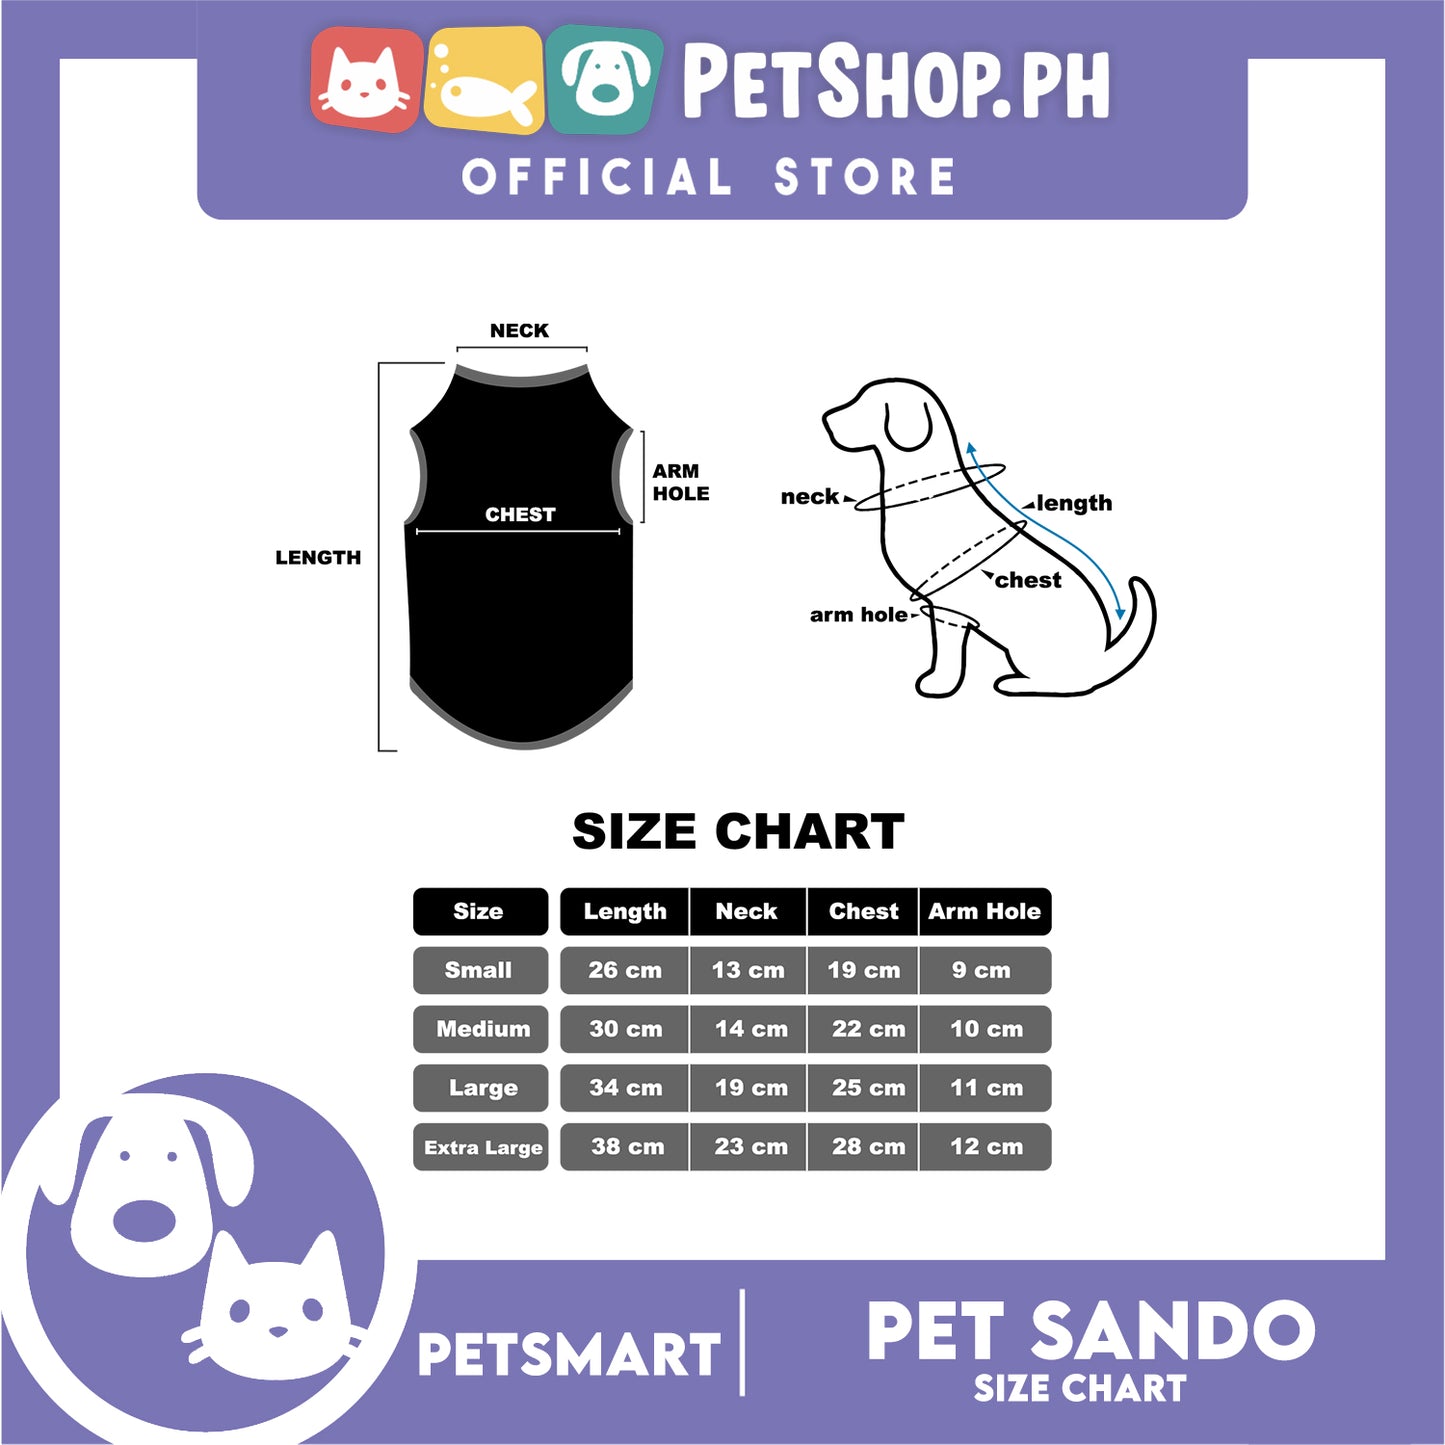 Pet Sando (Large) Cookie Blue Print Design Sando Pet Shirt Sando Breathable Clothes Pet T-shirt